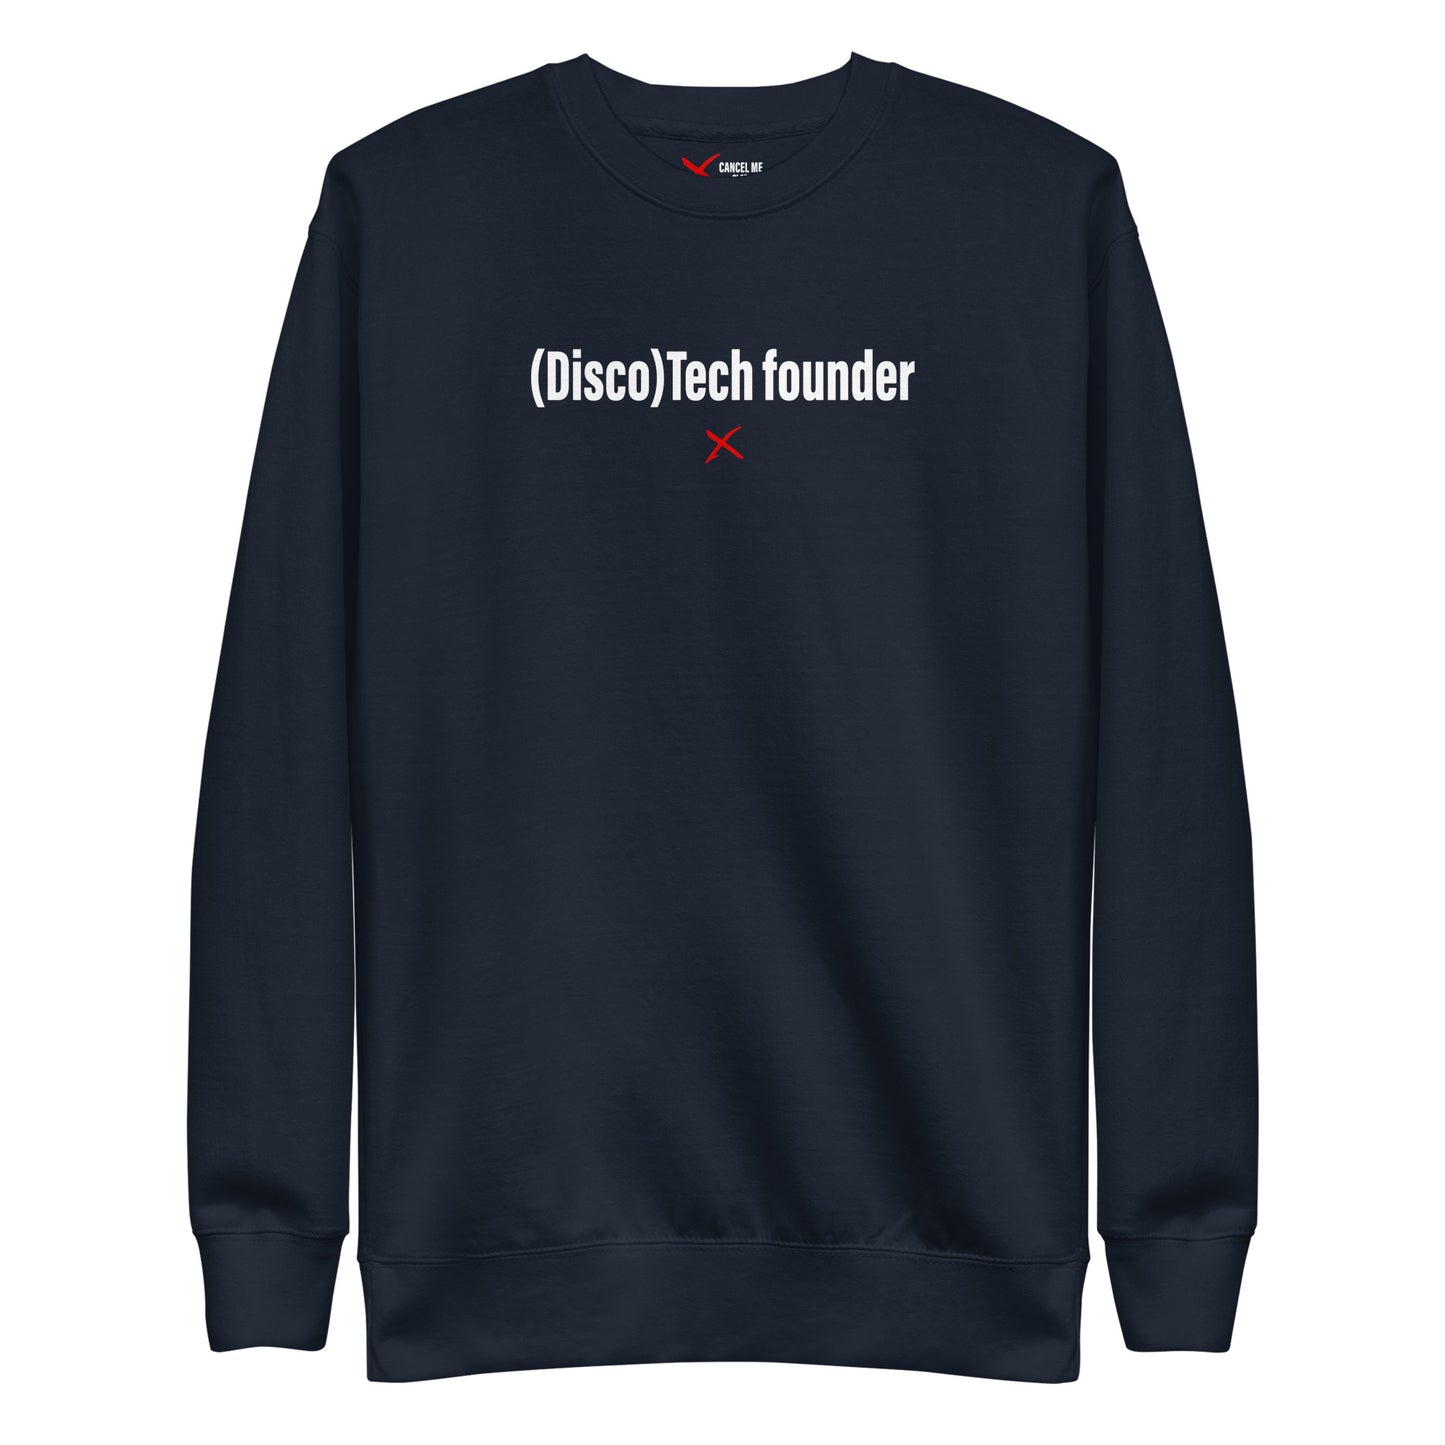 (Disco)Tech founder - Sweatshirt